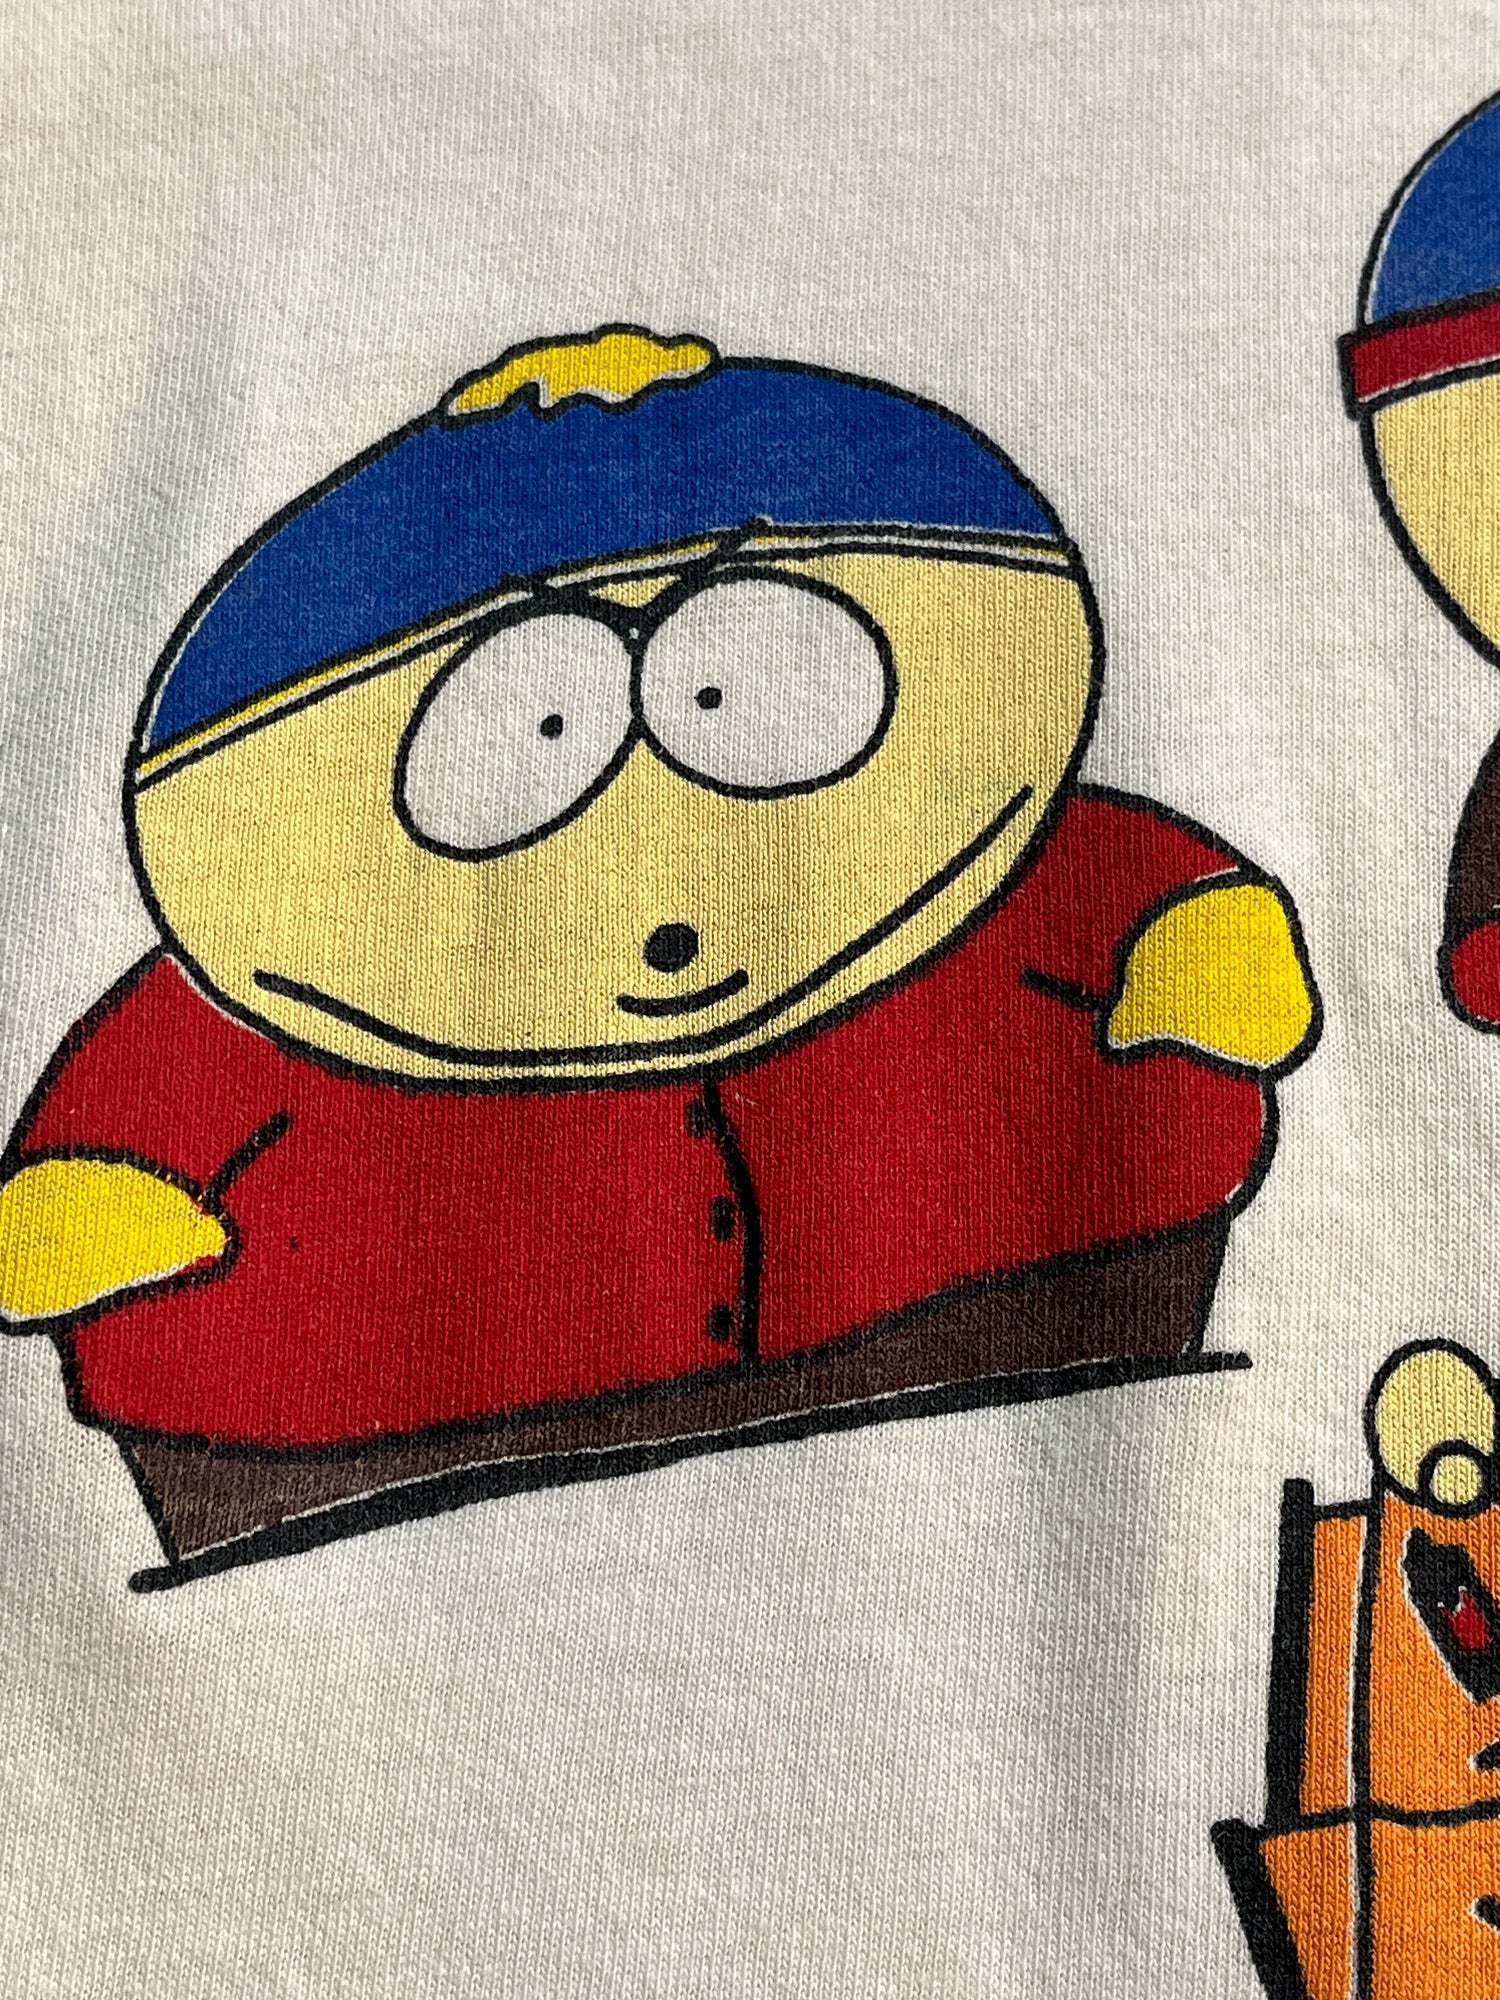 Kenny Est 1997 South Park Shirt South Park - Sgatee